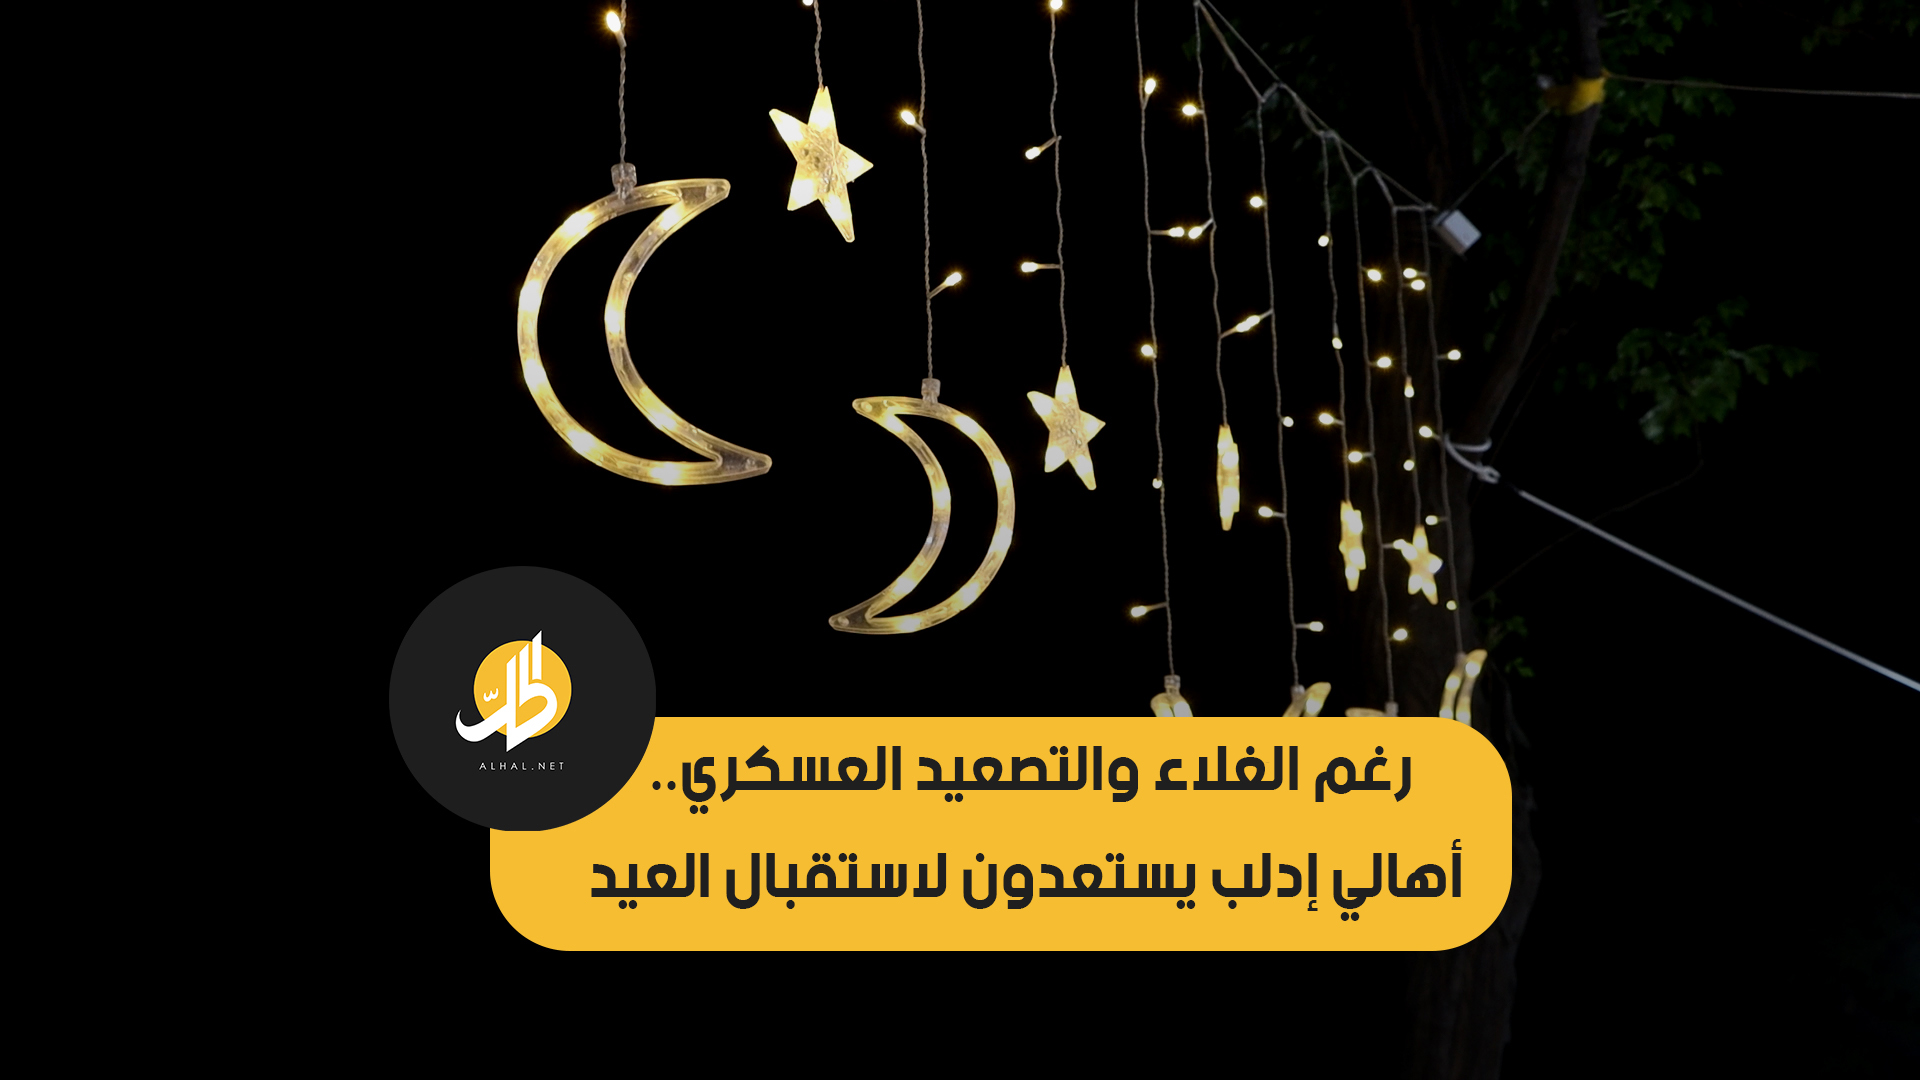 رغم الغلاء والتصعيد العسكري.. أهالي إدلب يستعدون لاستقبال العيد